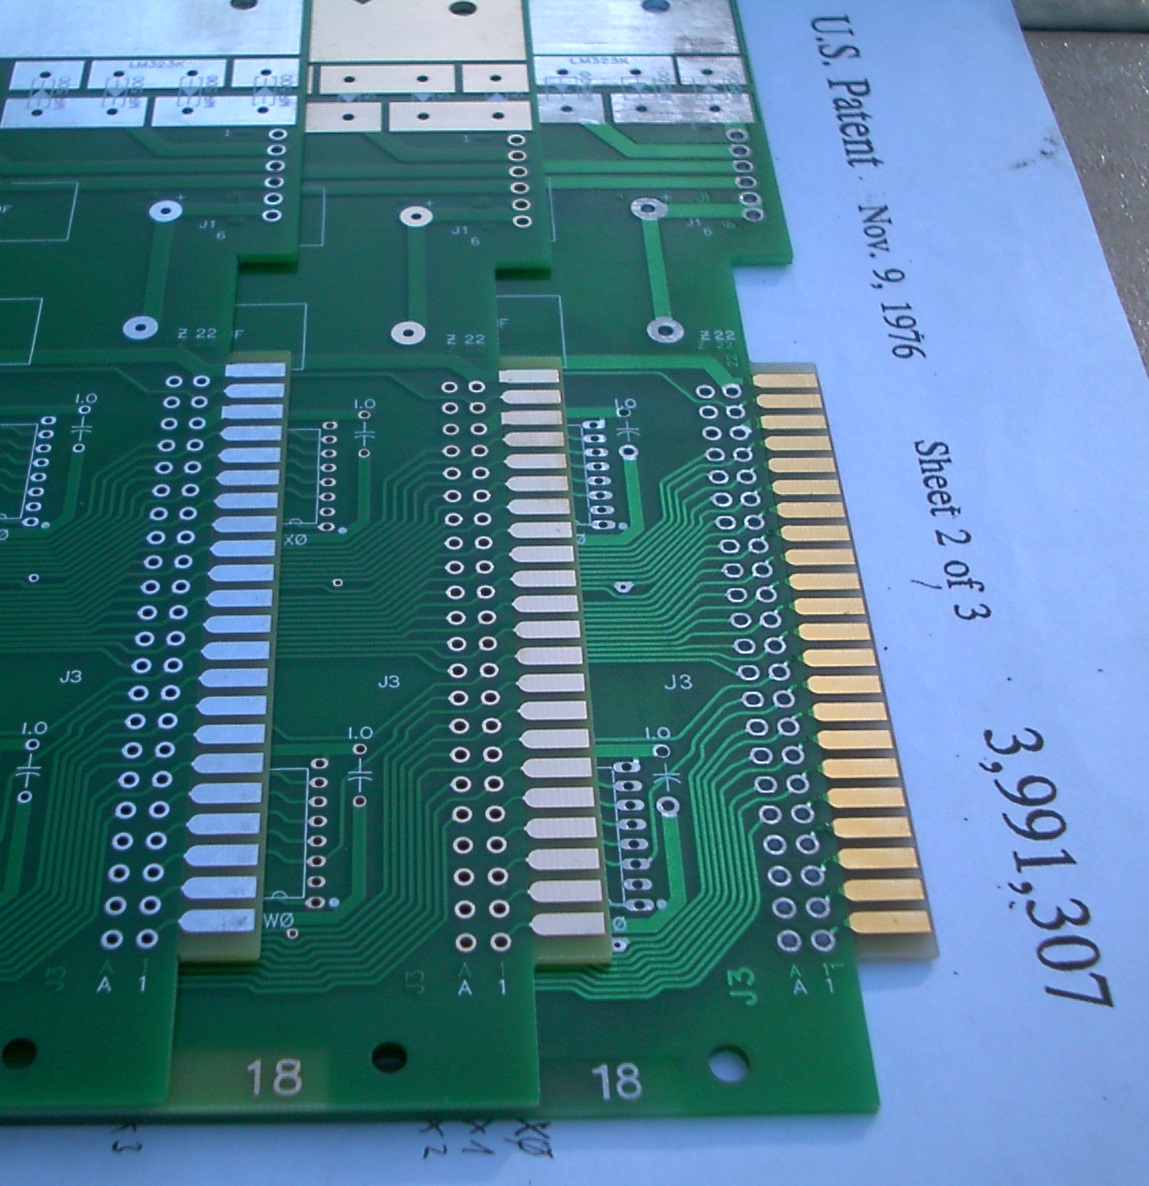 PCB edge connector comparision